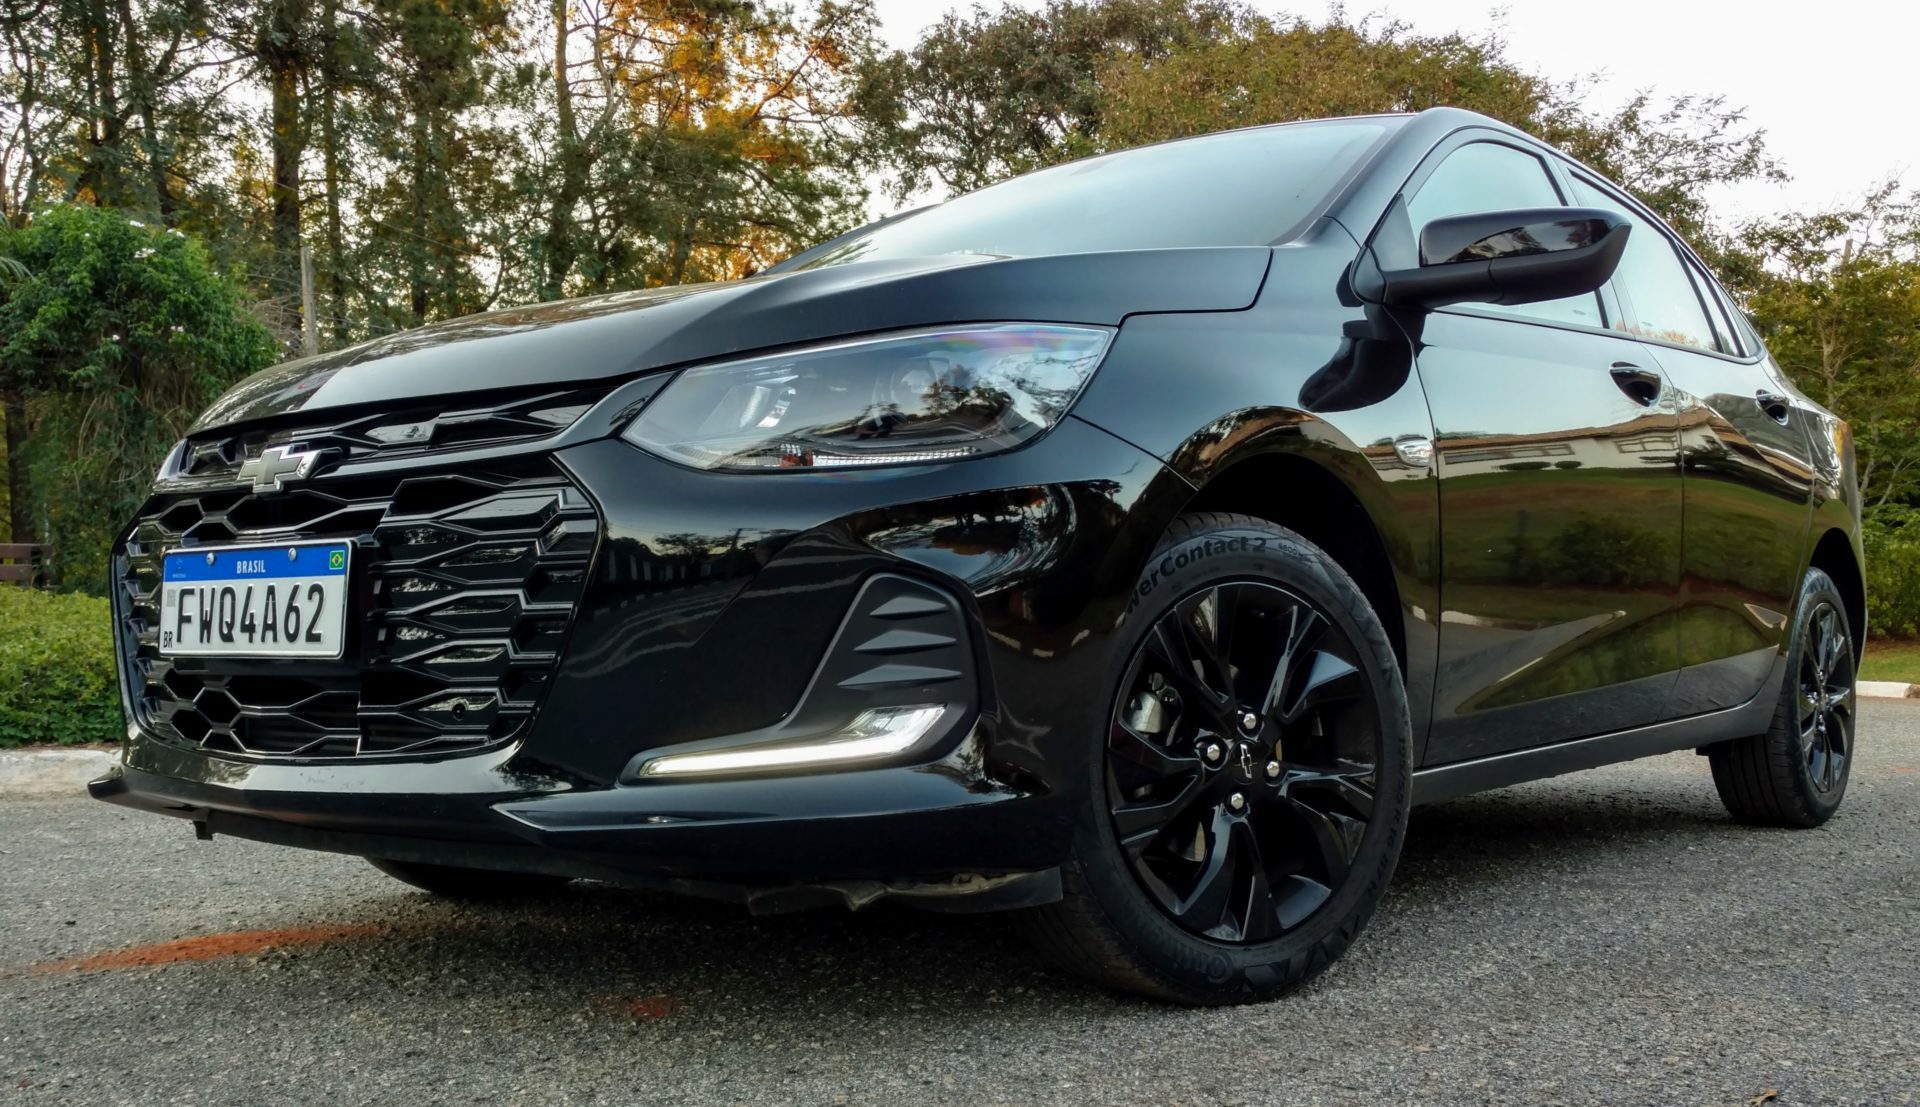 Avaliação) Chevrolet Onix Plus Midnight vale mais a pena que um Premier? –  Carros e Garagem